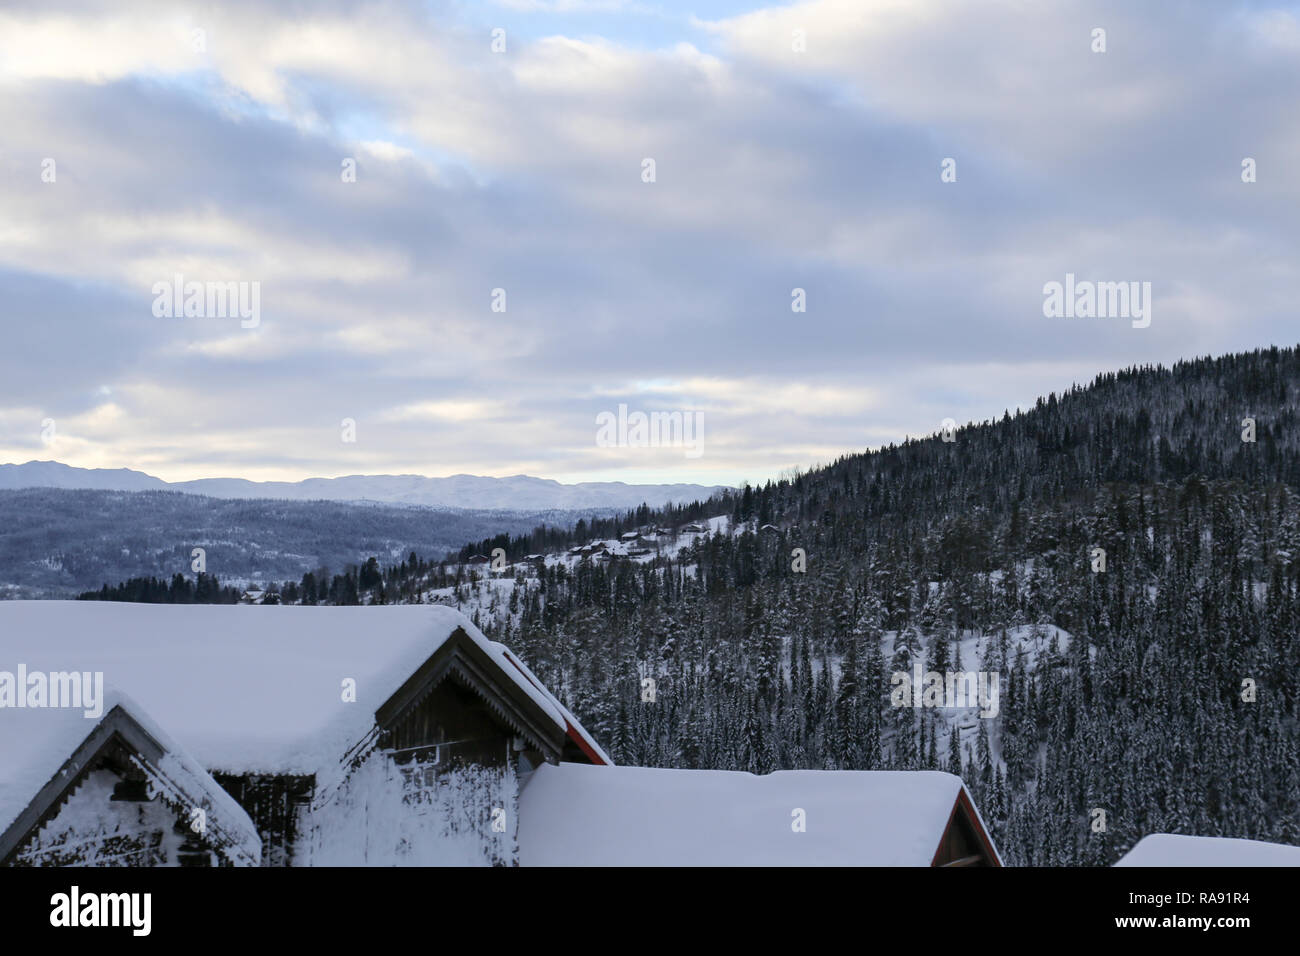 Norwegische Dach der Kabine mit Schnee bedeckten Berg Szene Stockfoto